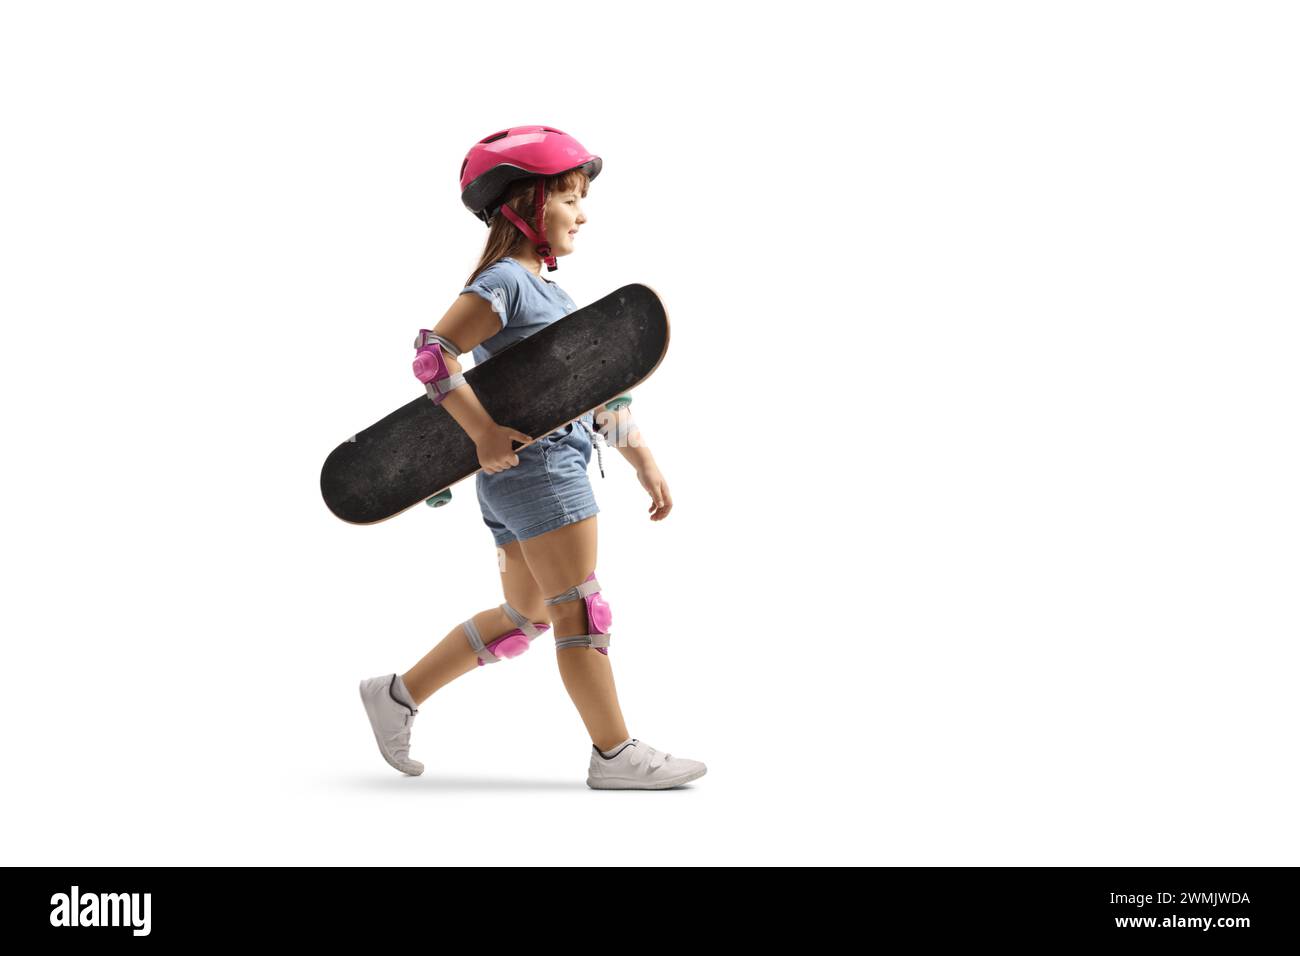 Plan de profil pleine longueur d'une petite fille marchant et portant une planche à roulettes, portant un coude, des genouillères et un casque isolé sur fond blanc Banque D'Images